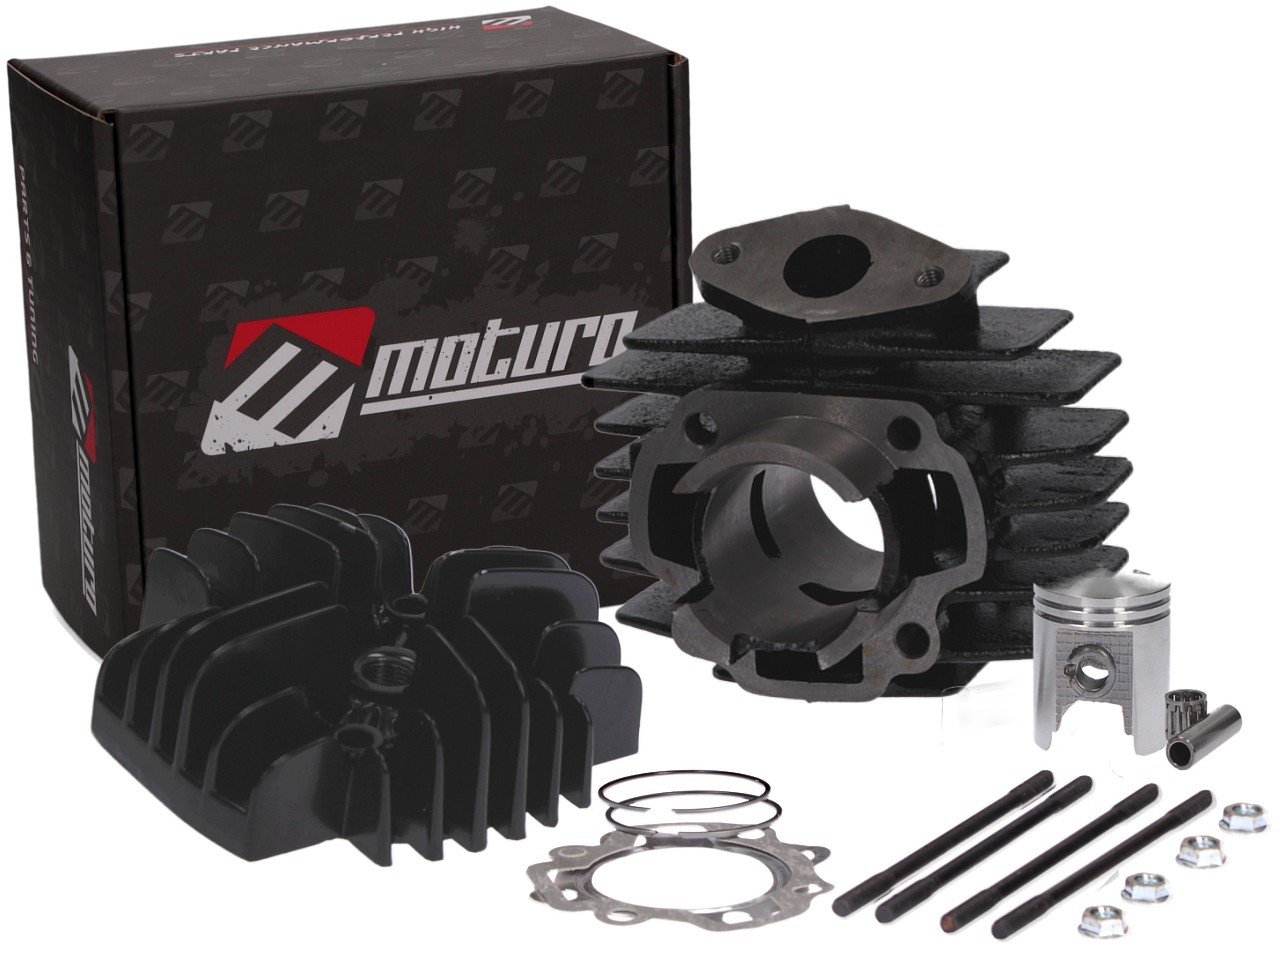 Moturo Zylinder Kit für Yamaha 50cc PW 50 86-06 QT-50 79-87 von Moturo